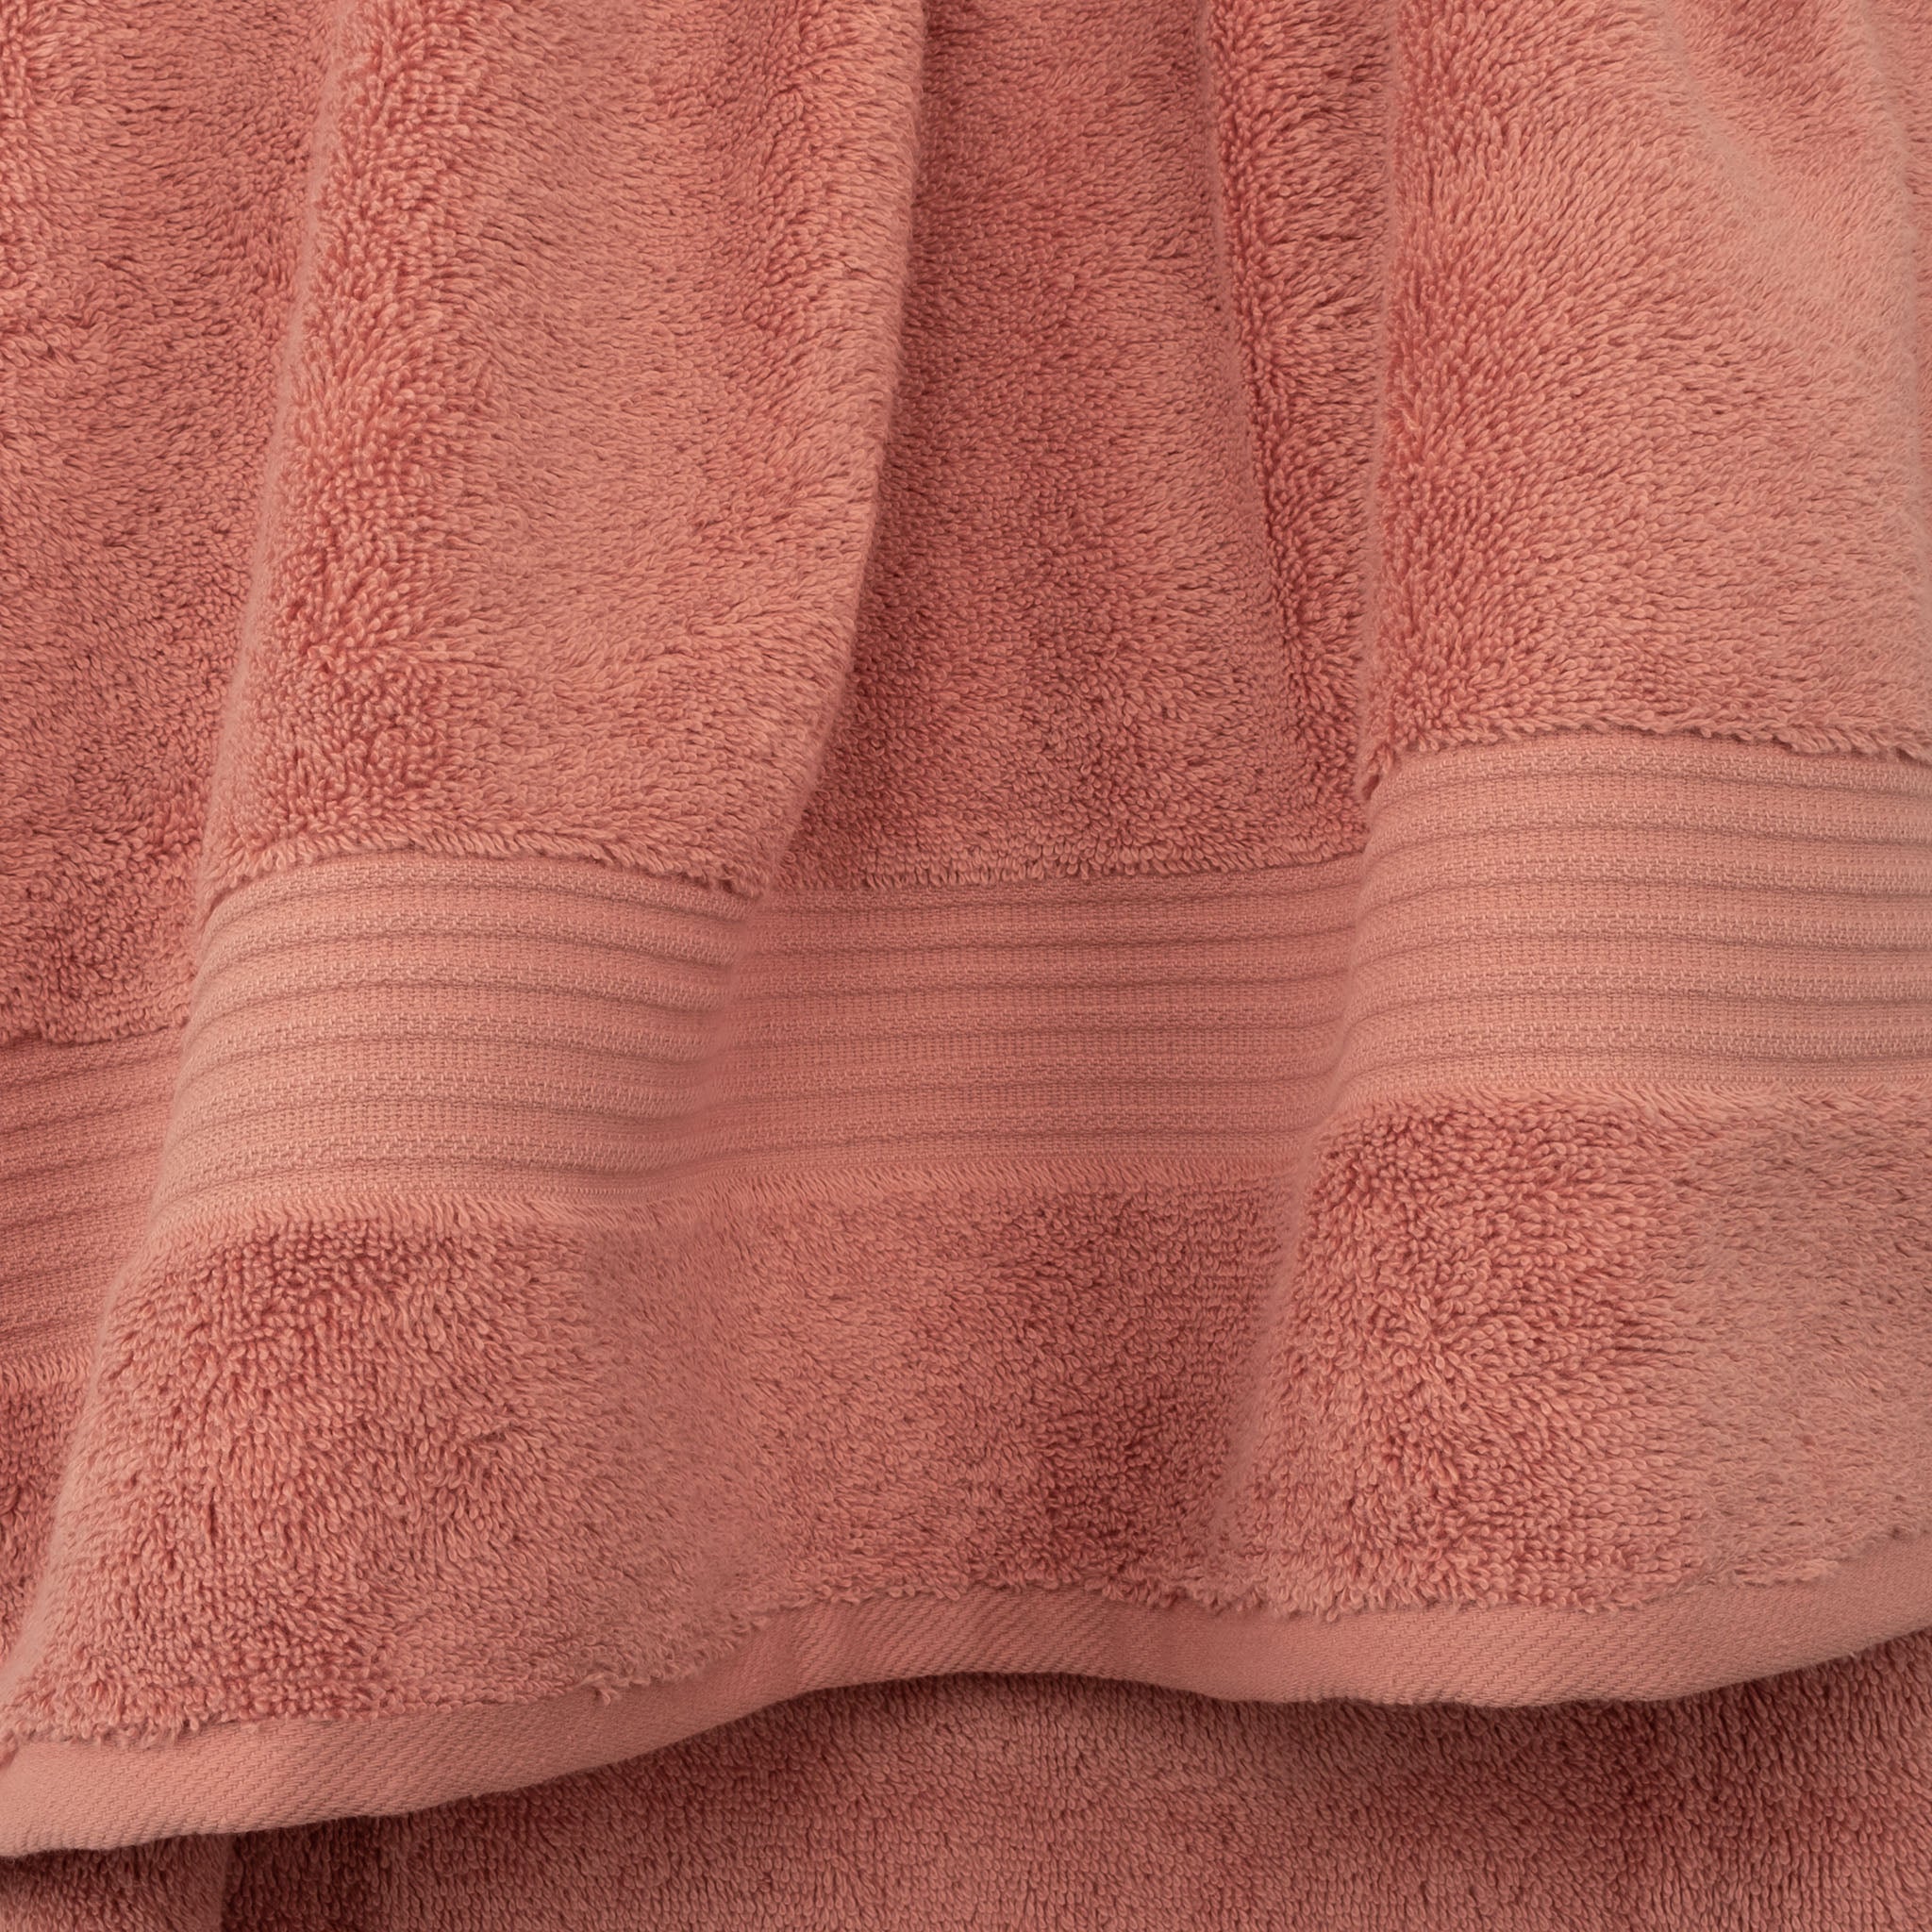 American Soft Linen Bekos 100% Cotton Turkish Towels, 4 Piece Bath Towel Set -coral-03